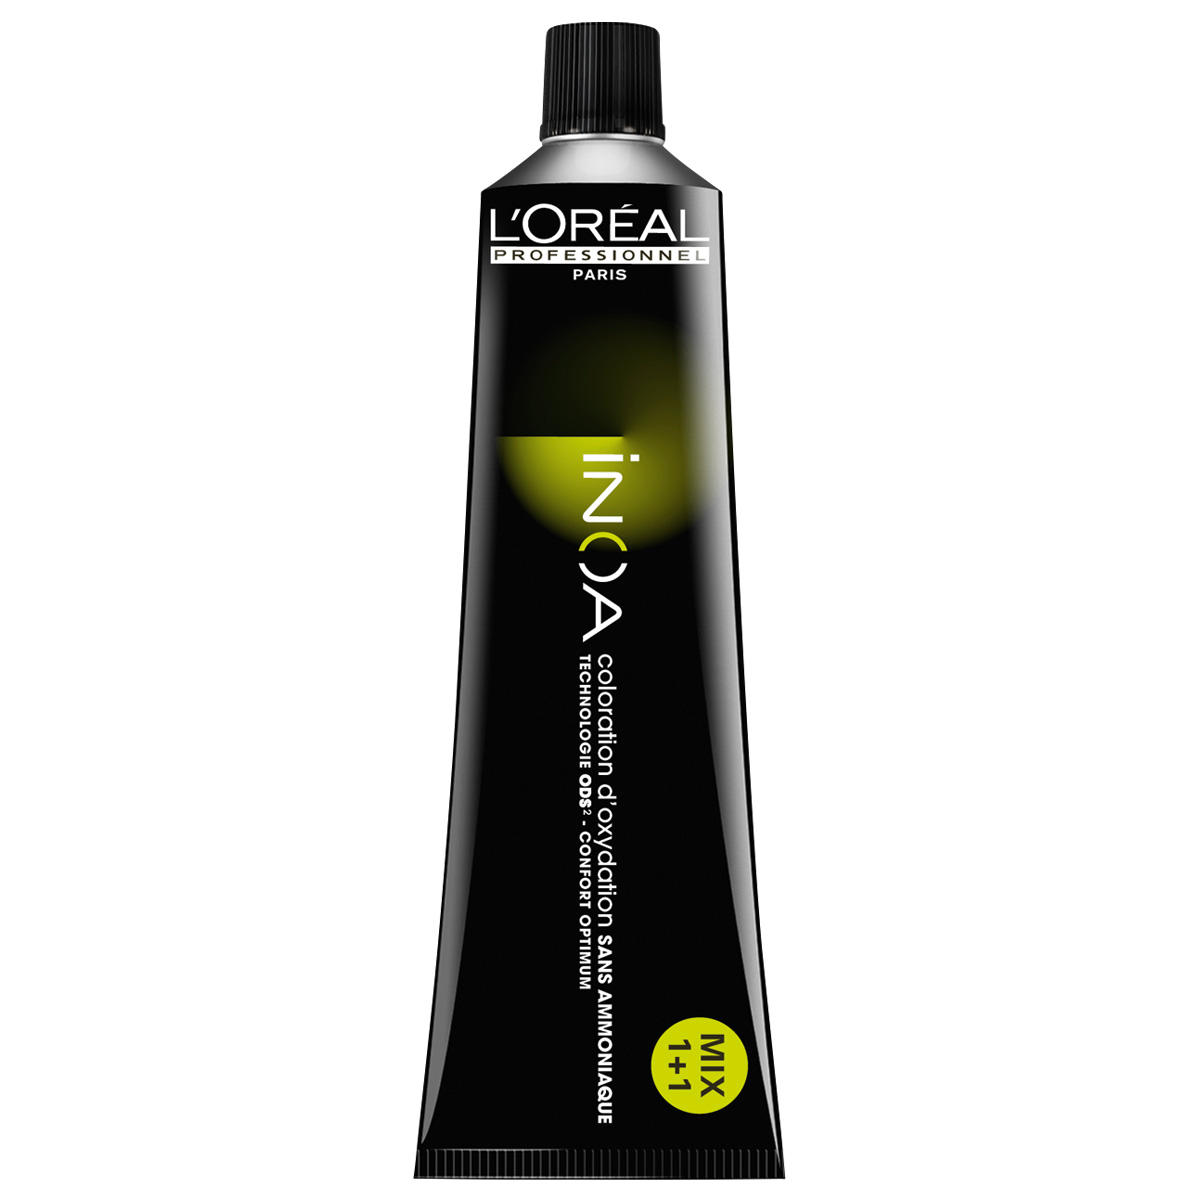 L'Oréal Professionnel Paris Coloration 1 Nero, tubo 60 ml